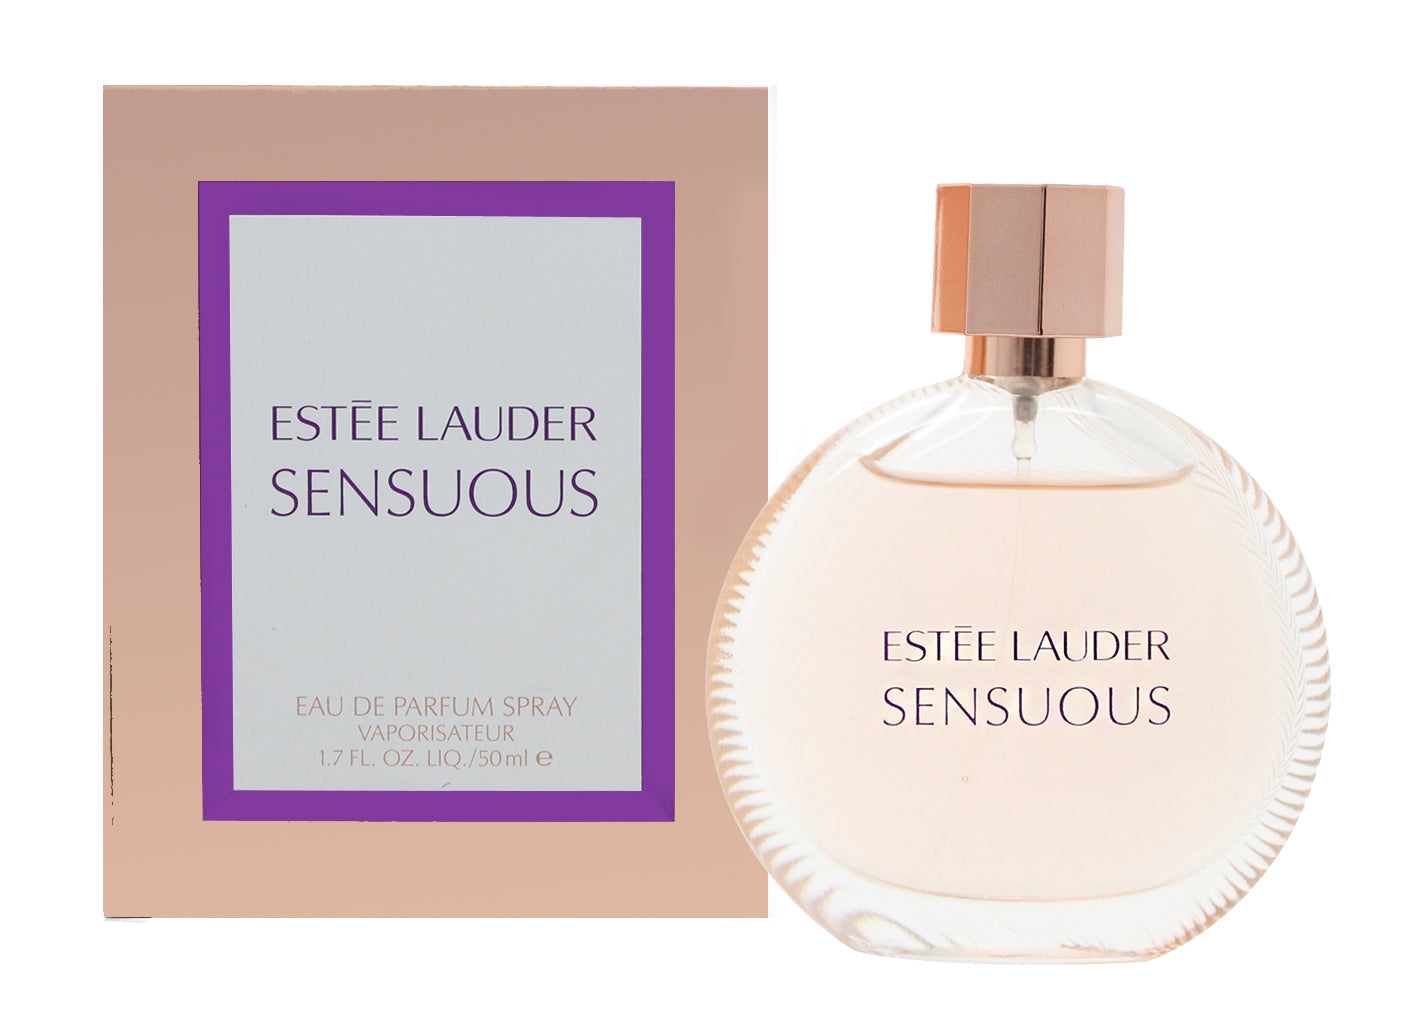 View Estee Lauder Sensuous Eau de Parfum 50ml Spray information